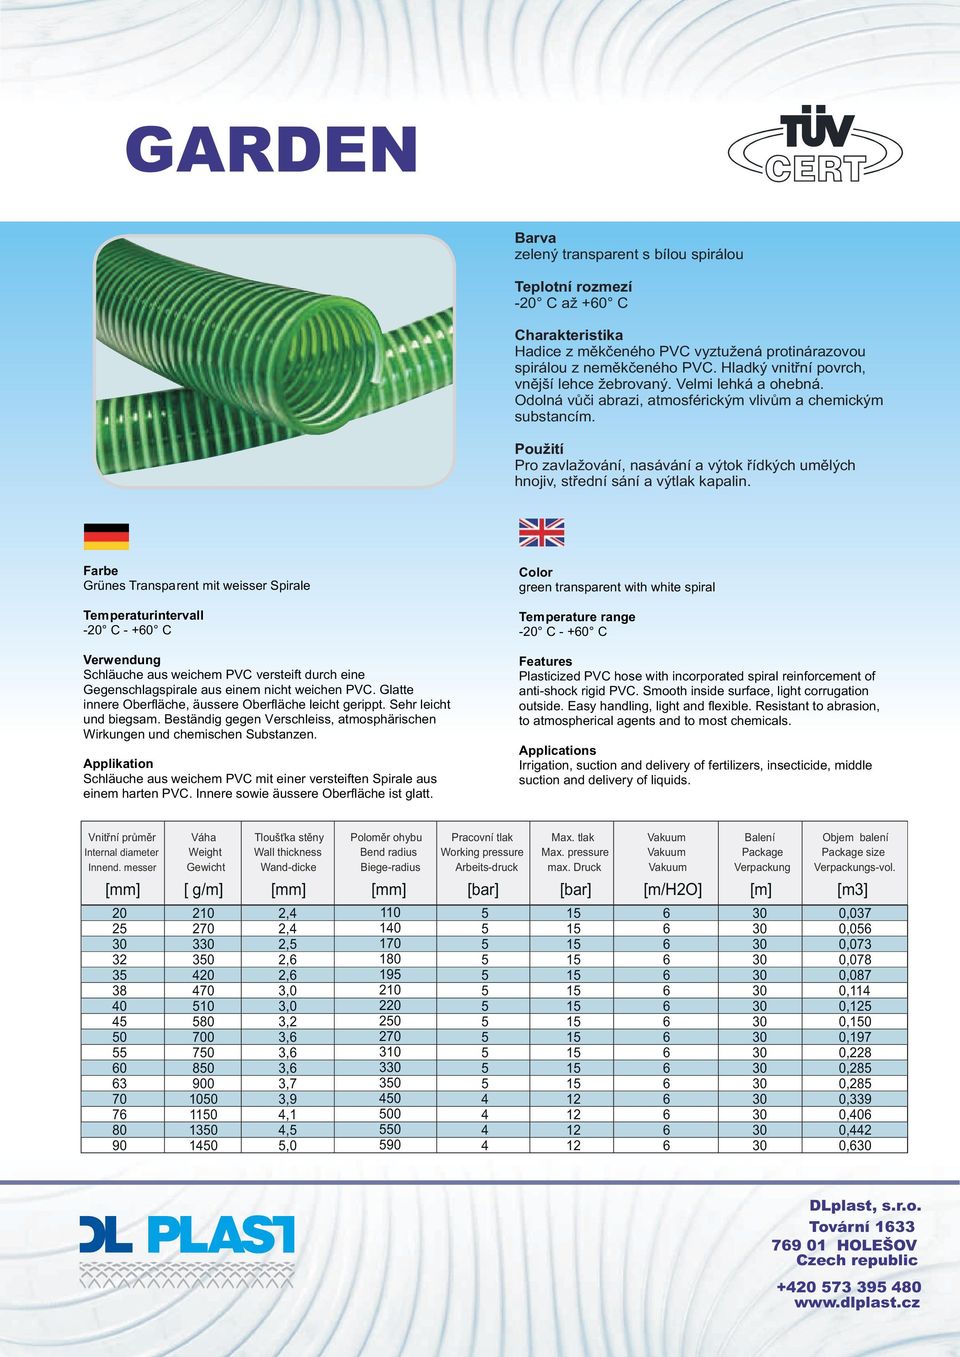 Grünes Transparent mit weisser Spirale - C - +0 C Schläuche aus weichem PVC versteift durch eine Gegenschlagspirale aus einem nicht weichen PVC.